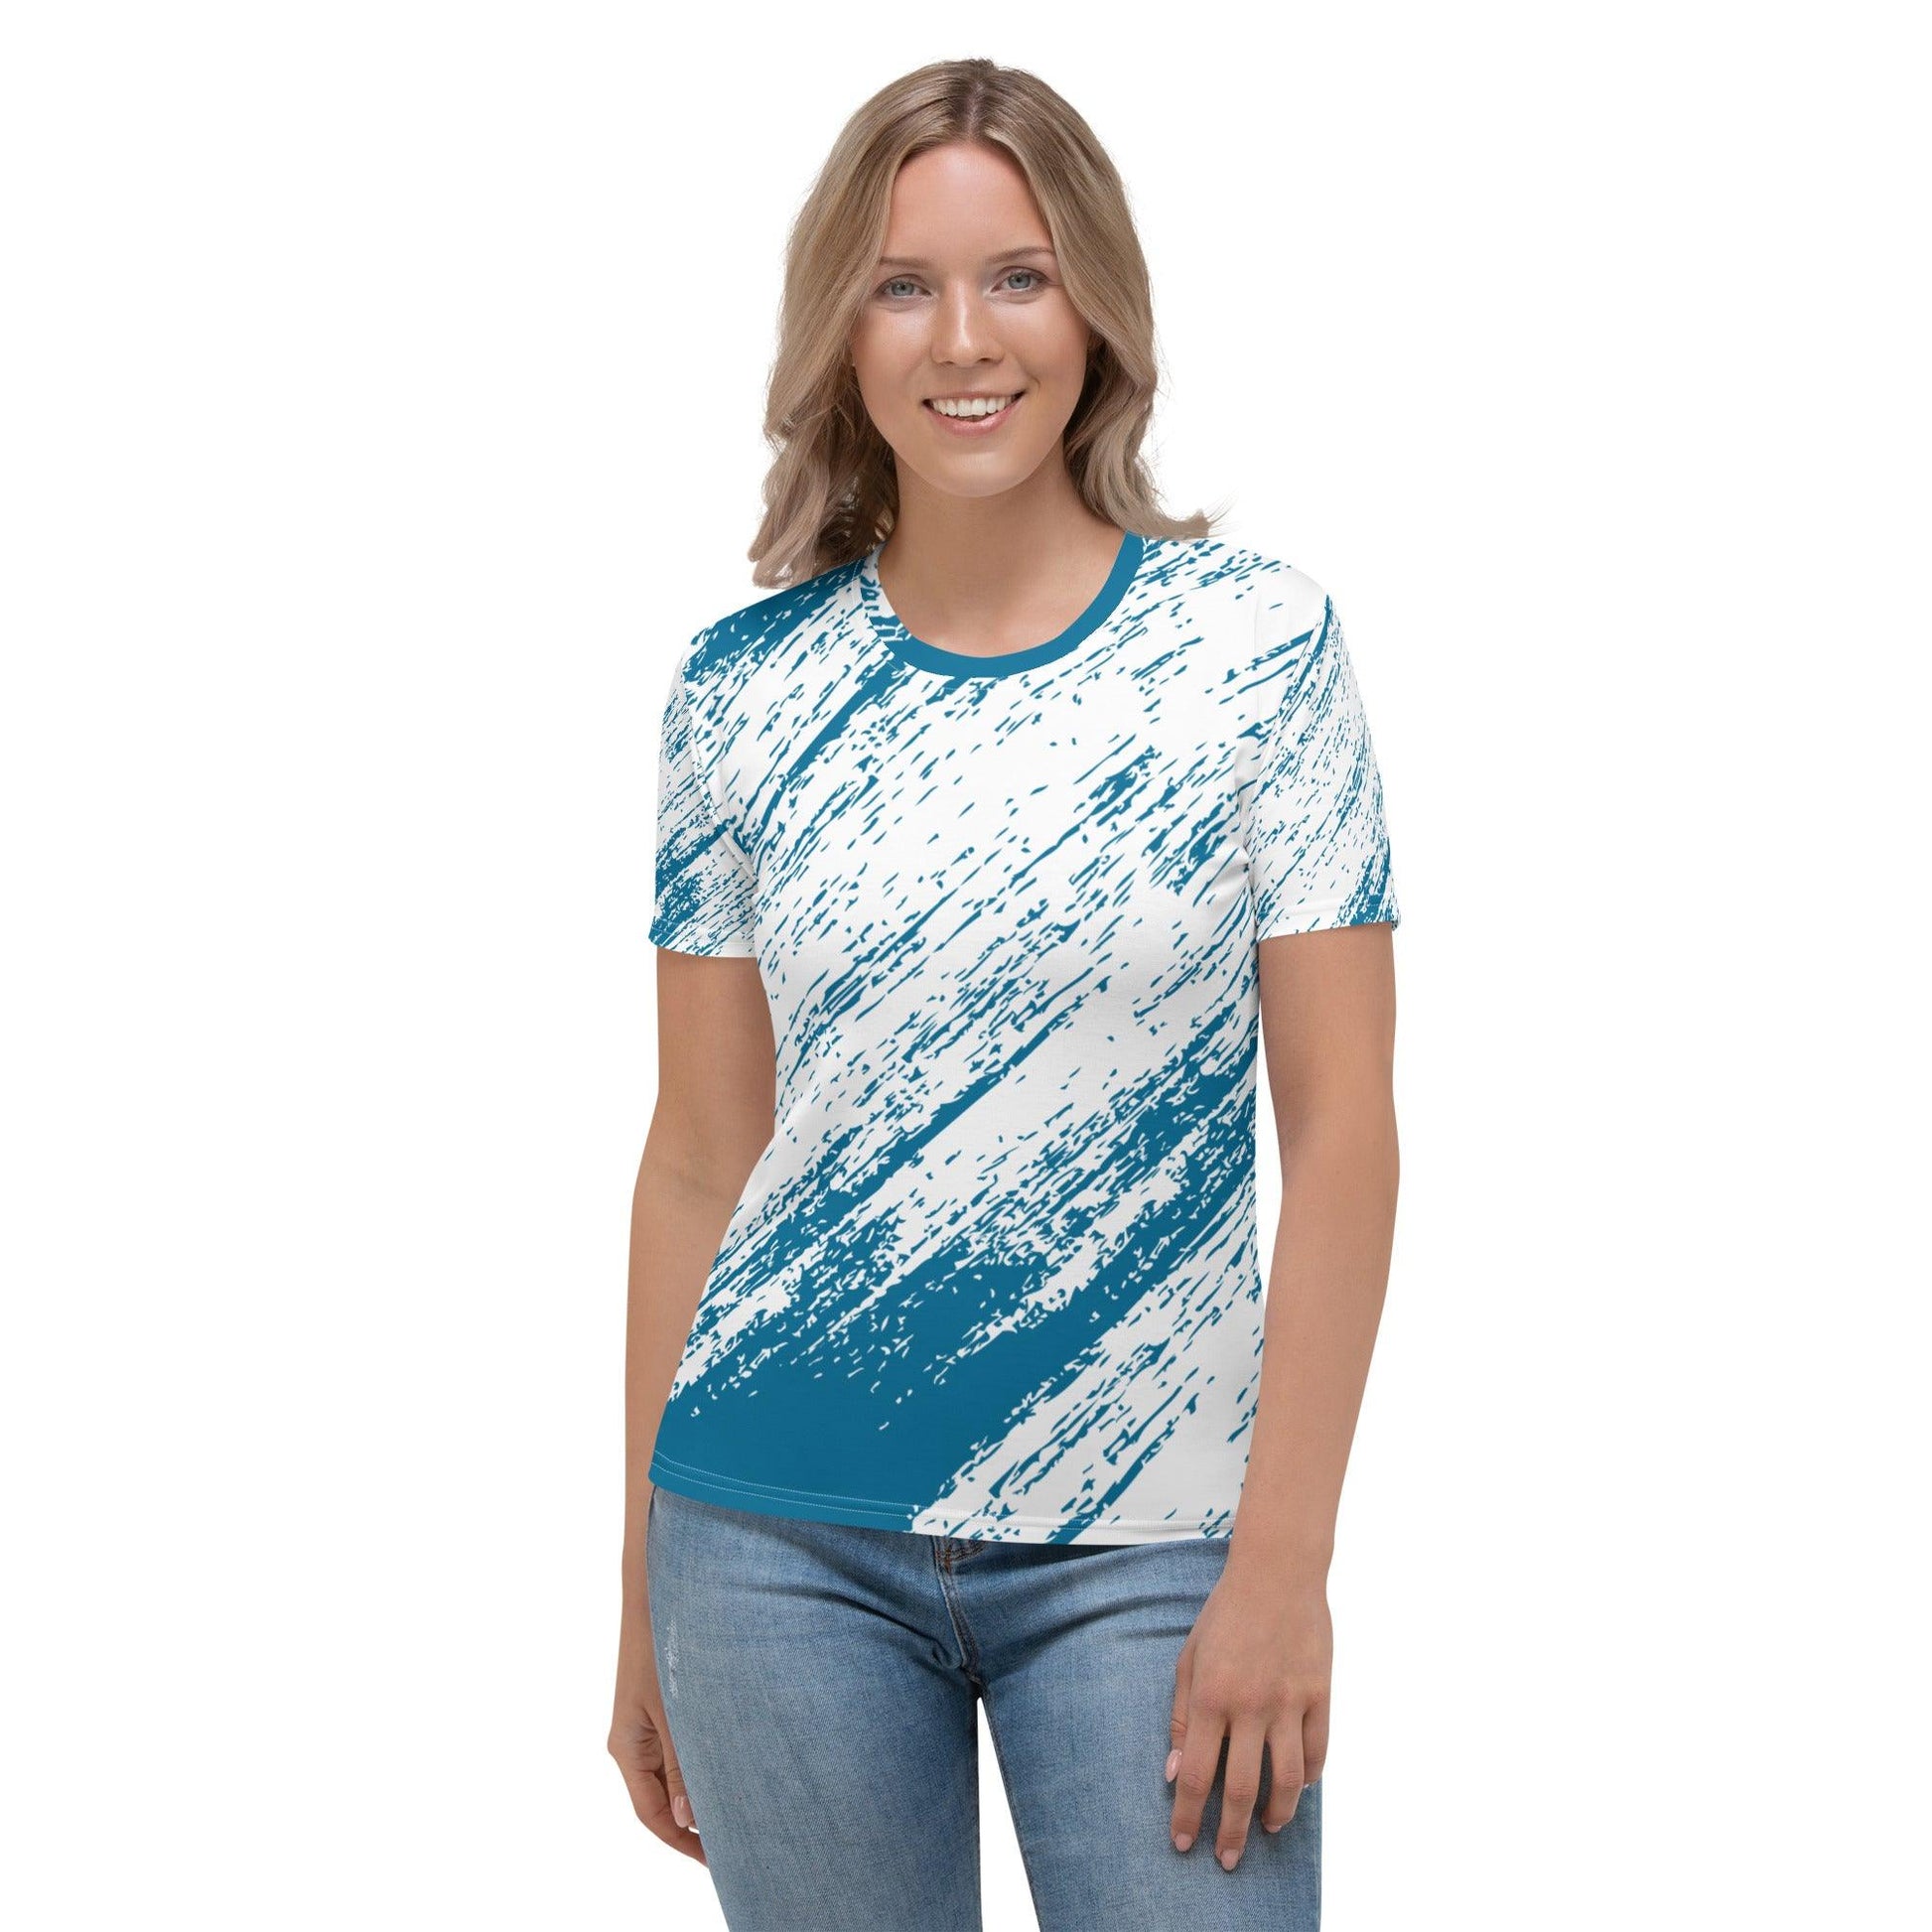 Rain Print T-Shirt - L & M Kee, LLC